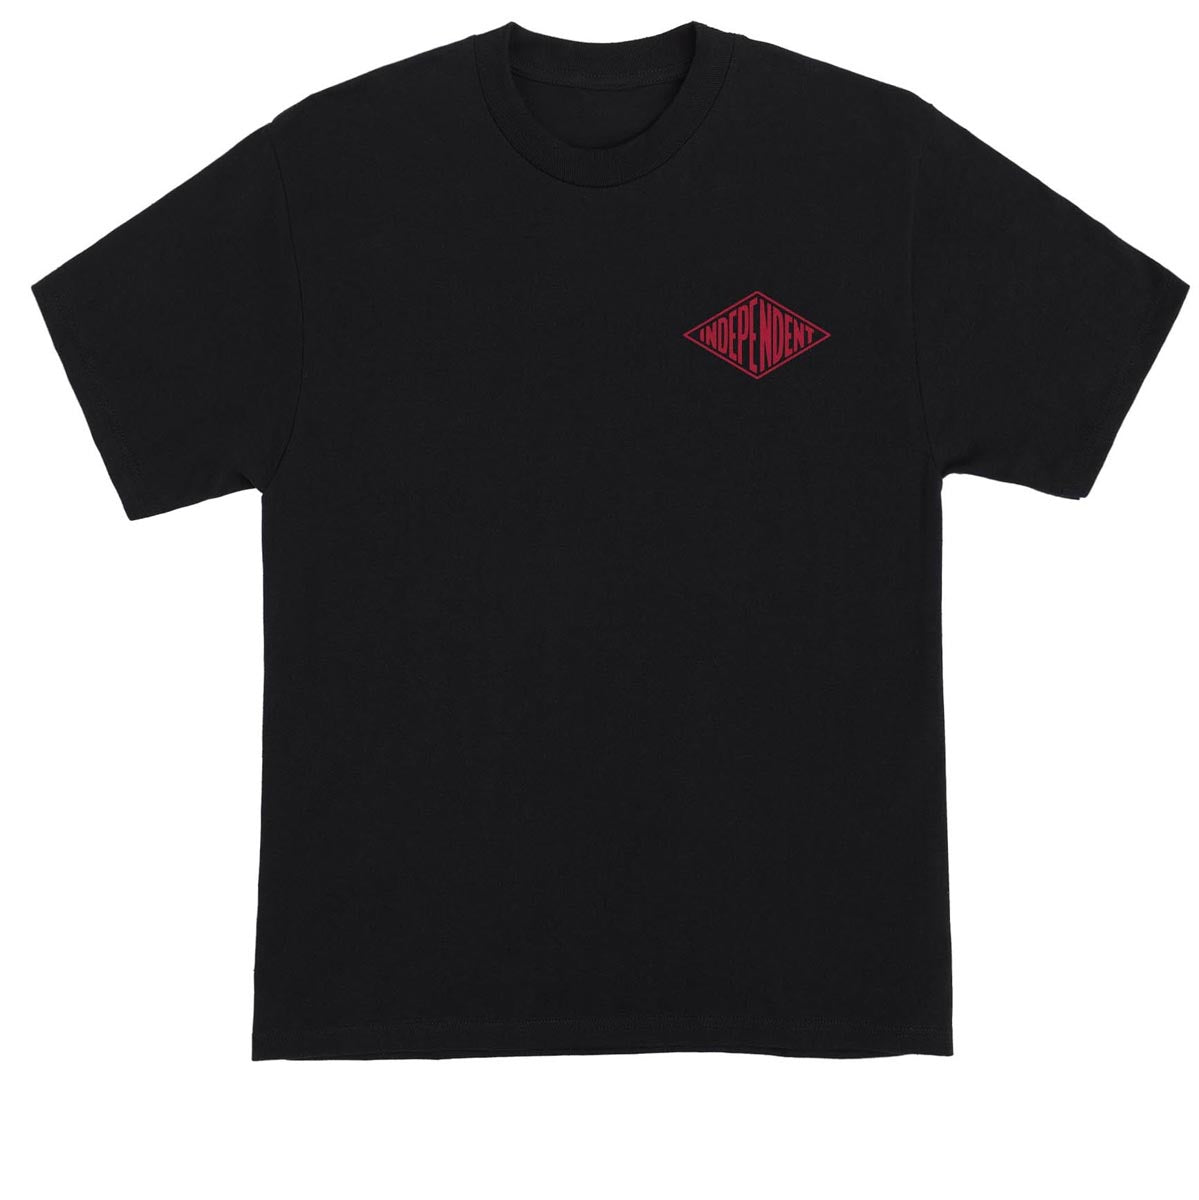 Independent GP Sealed T-Shirt - Black image 2